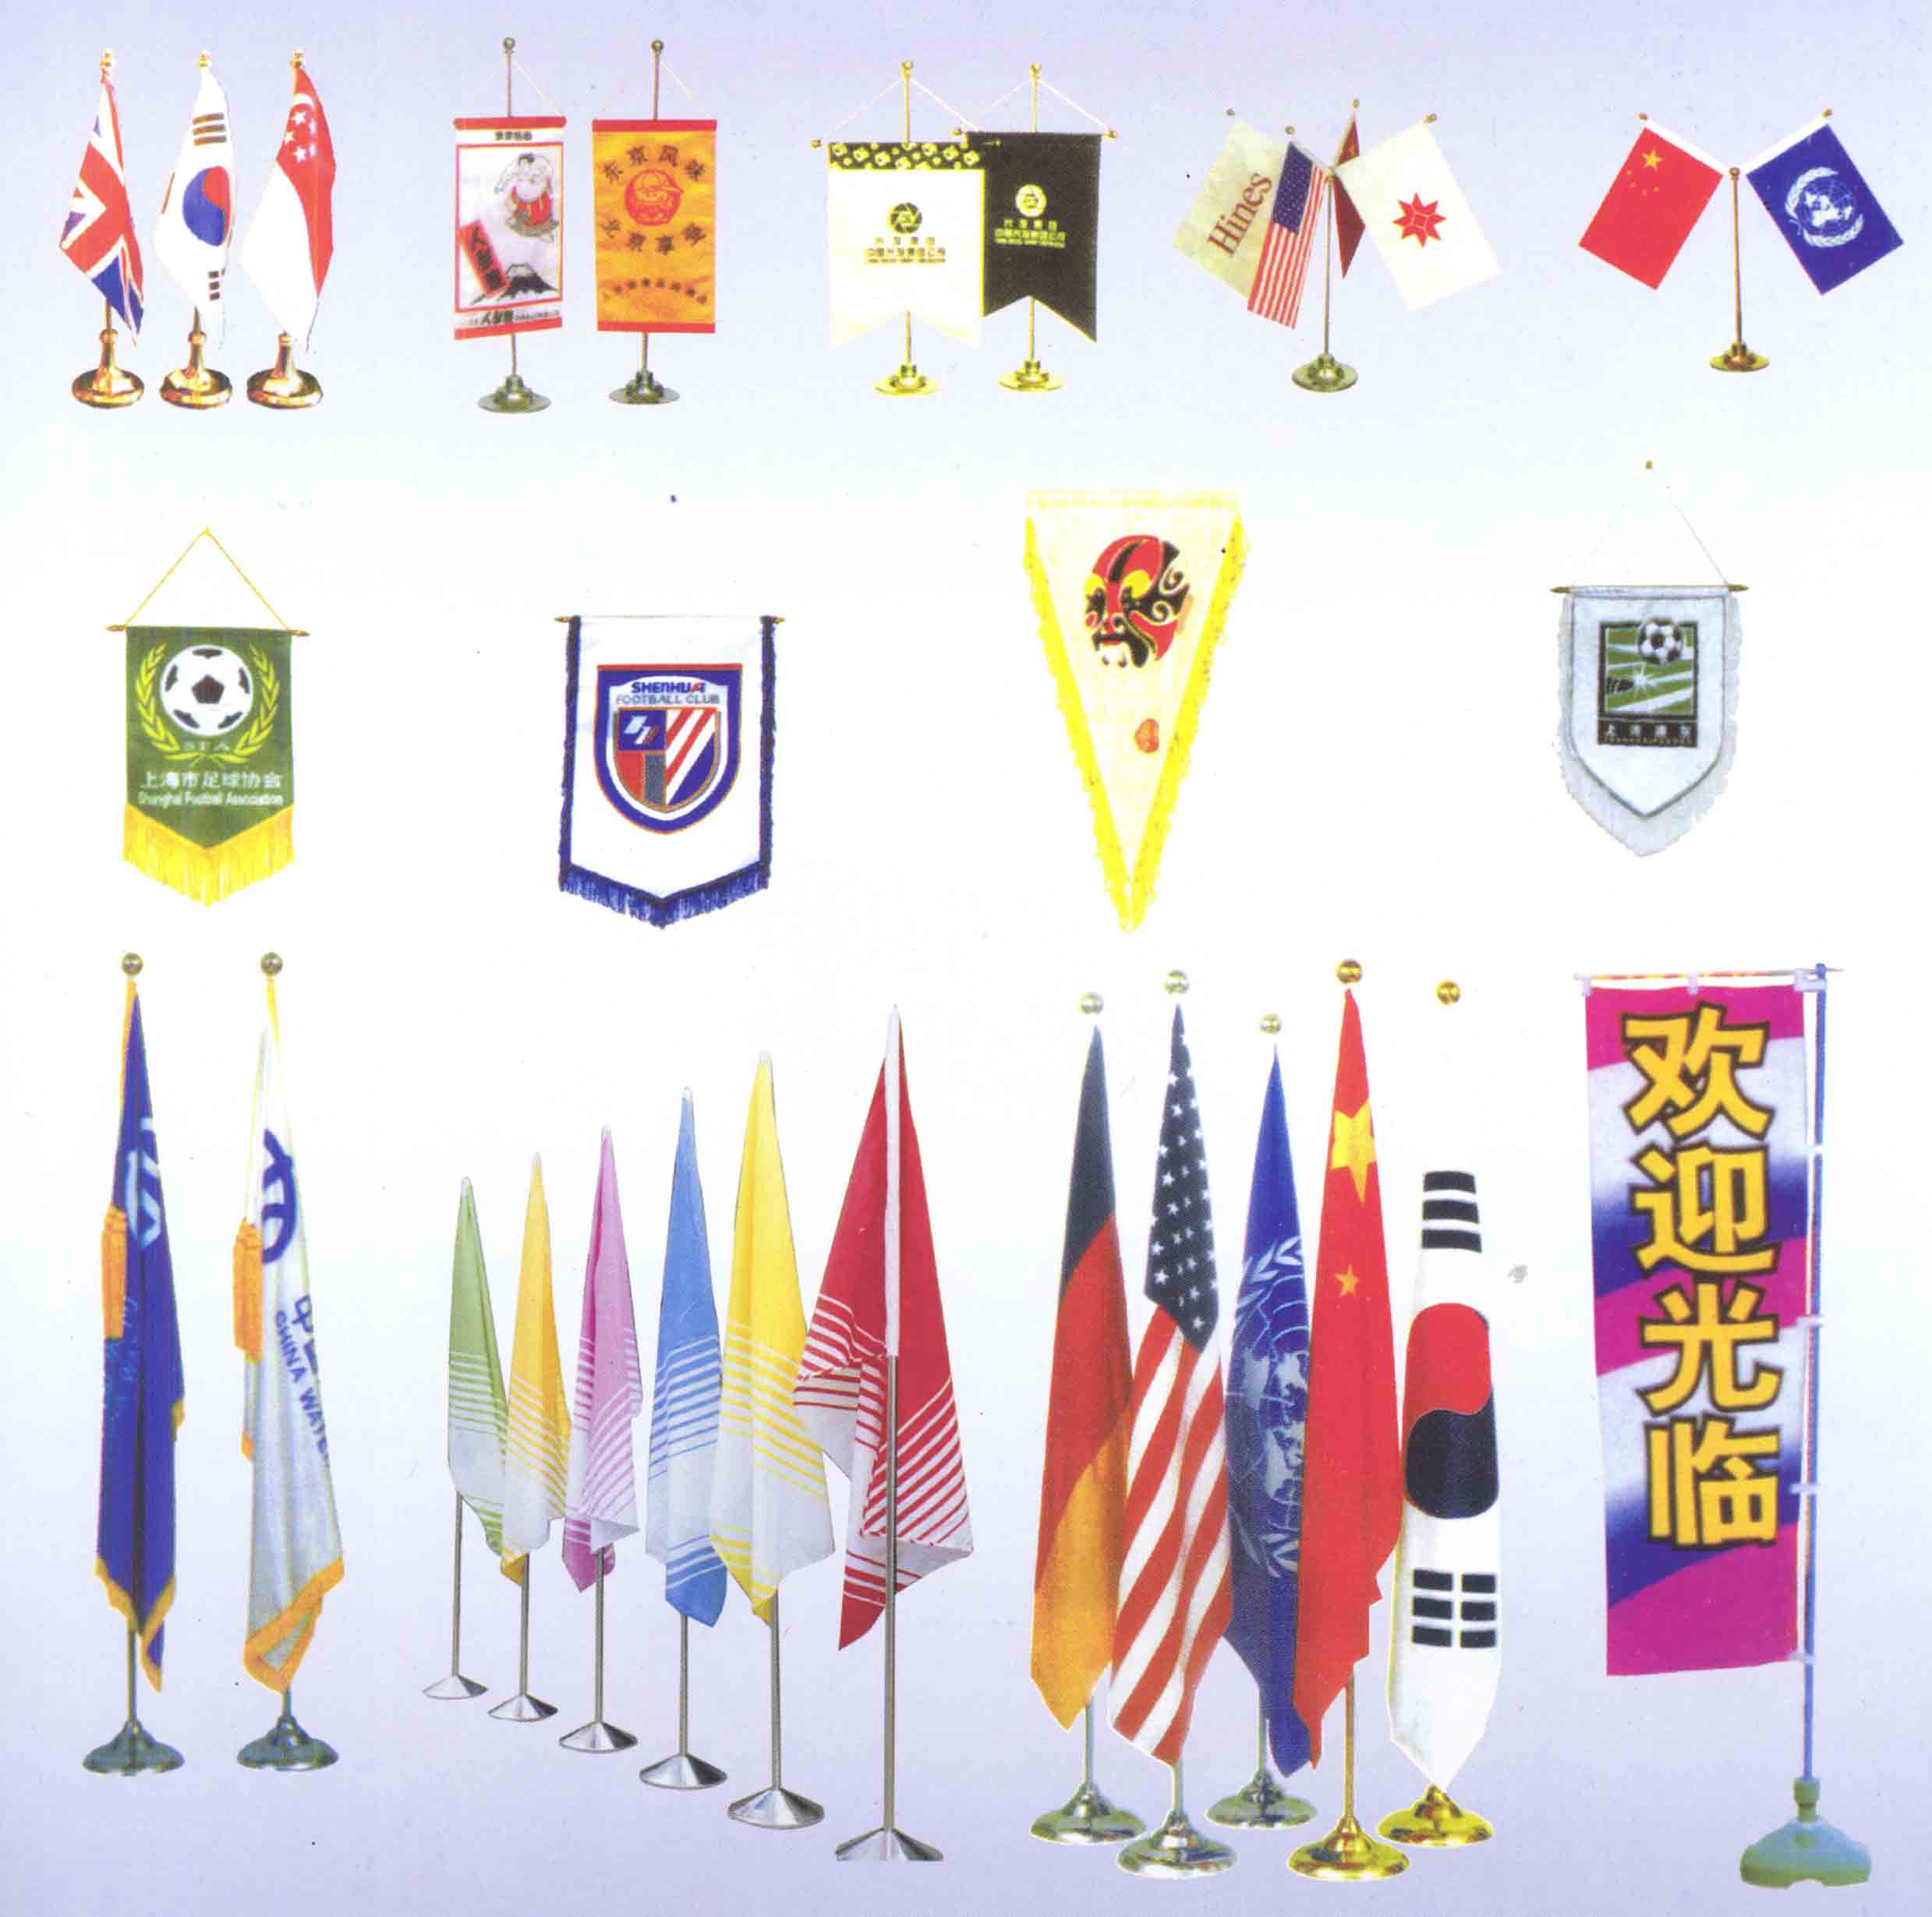 世界国旗,企业标识旗,各类旗帜,旗杆,旗座,